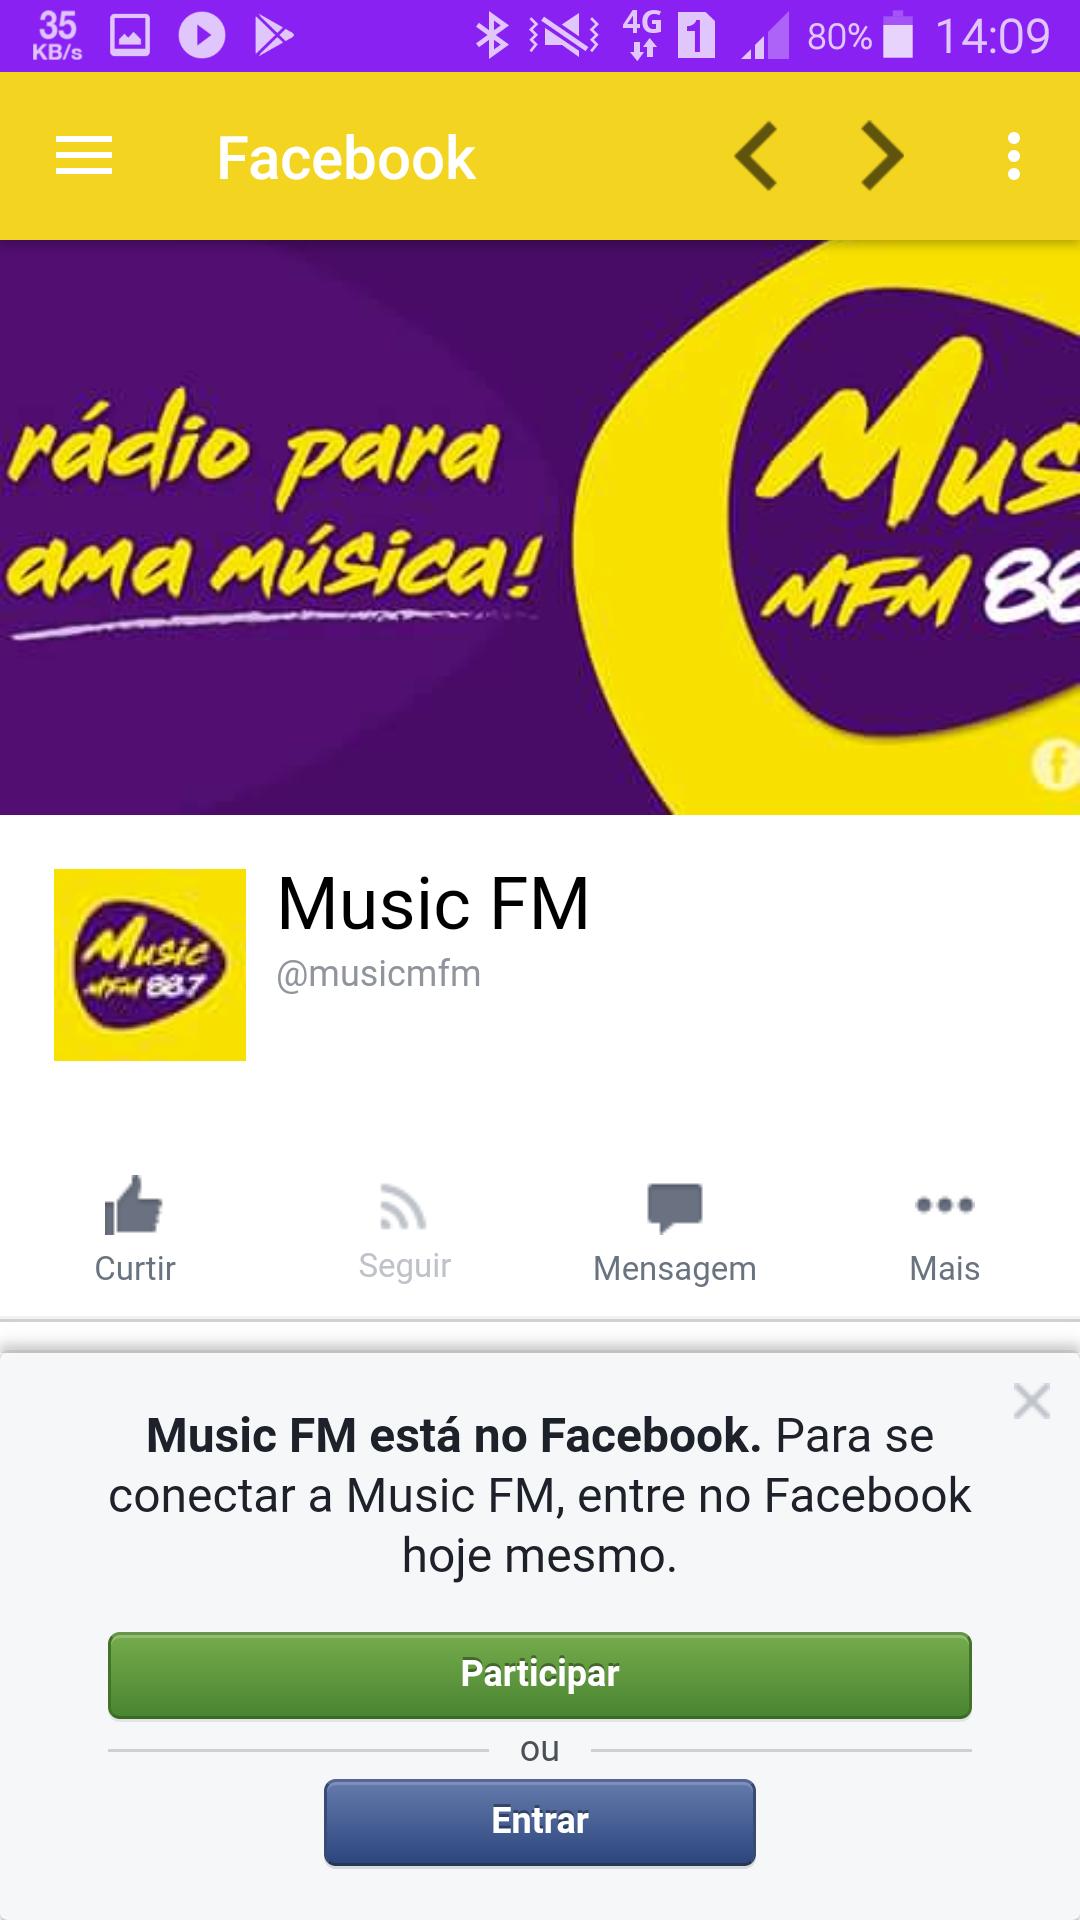 Download do APK de Music FM Recife para Android